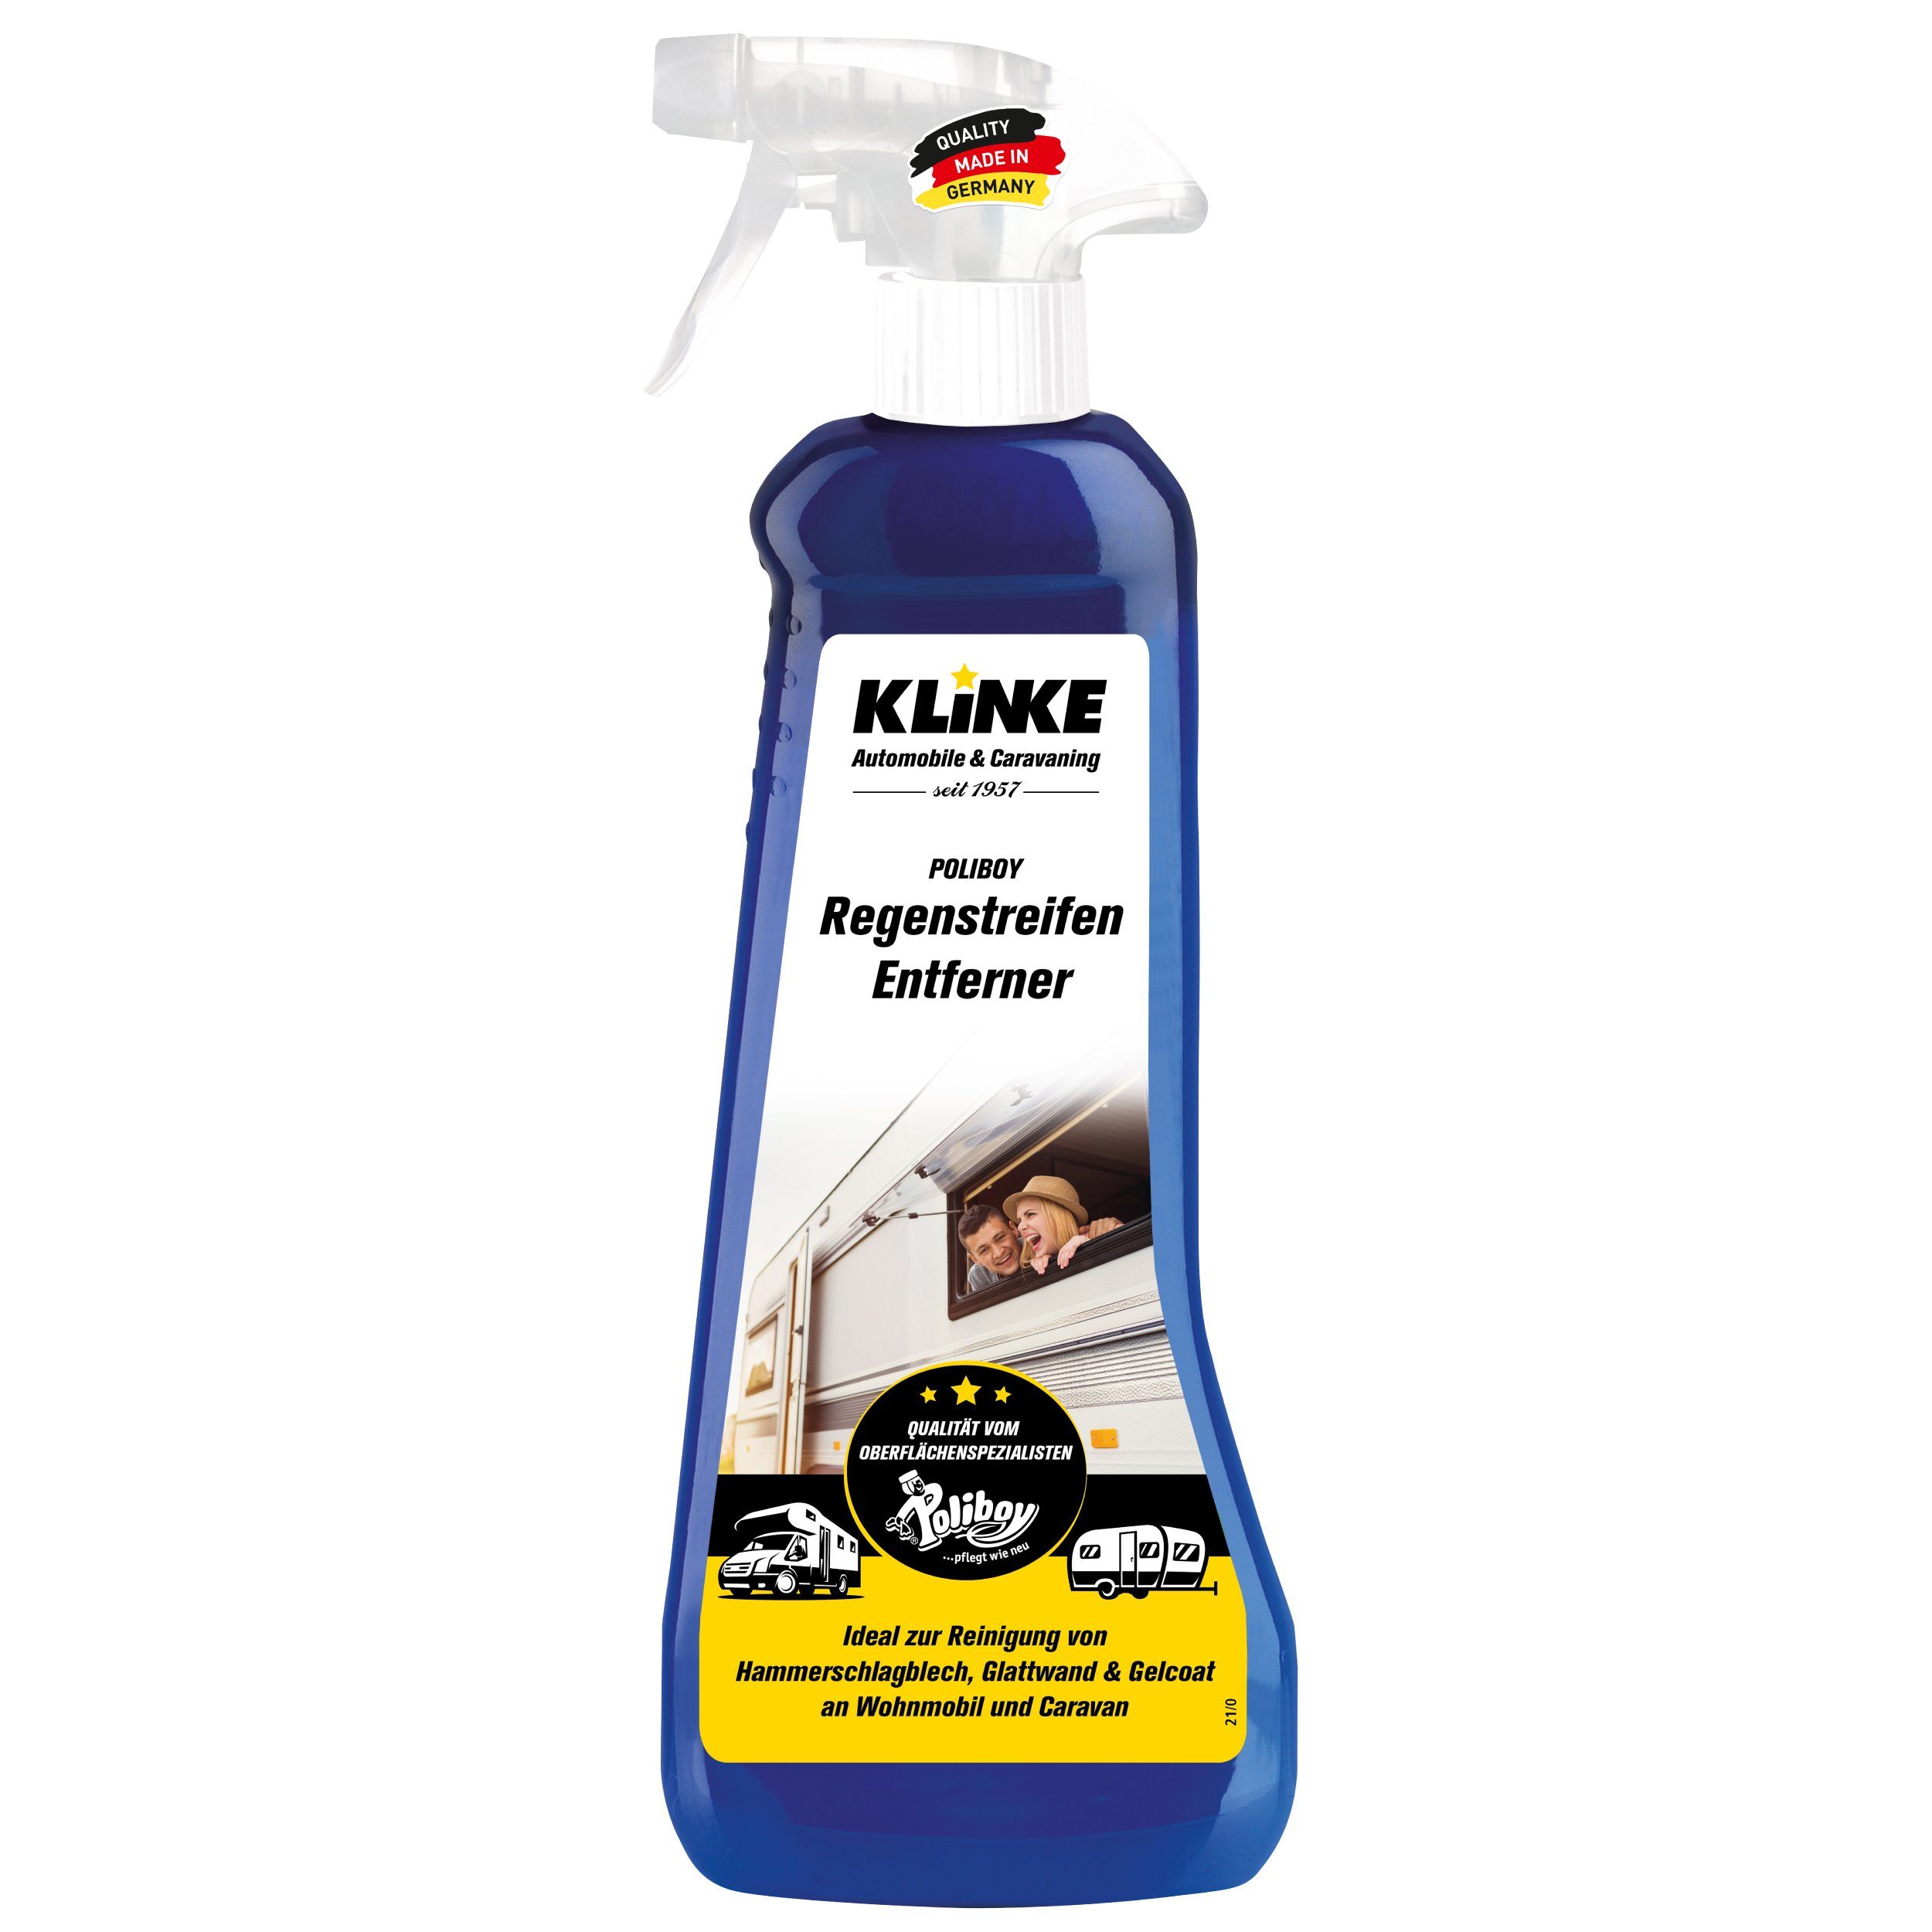 poliboy Klinke Regenstreifen Reiniger - 500 ml - Wohnmobil Pflegemittel Auto-Reinigungsmittel (beseitigt hartnäckige Verschmutzungen- Made in Germany) | Autopflege